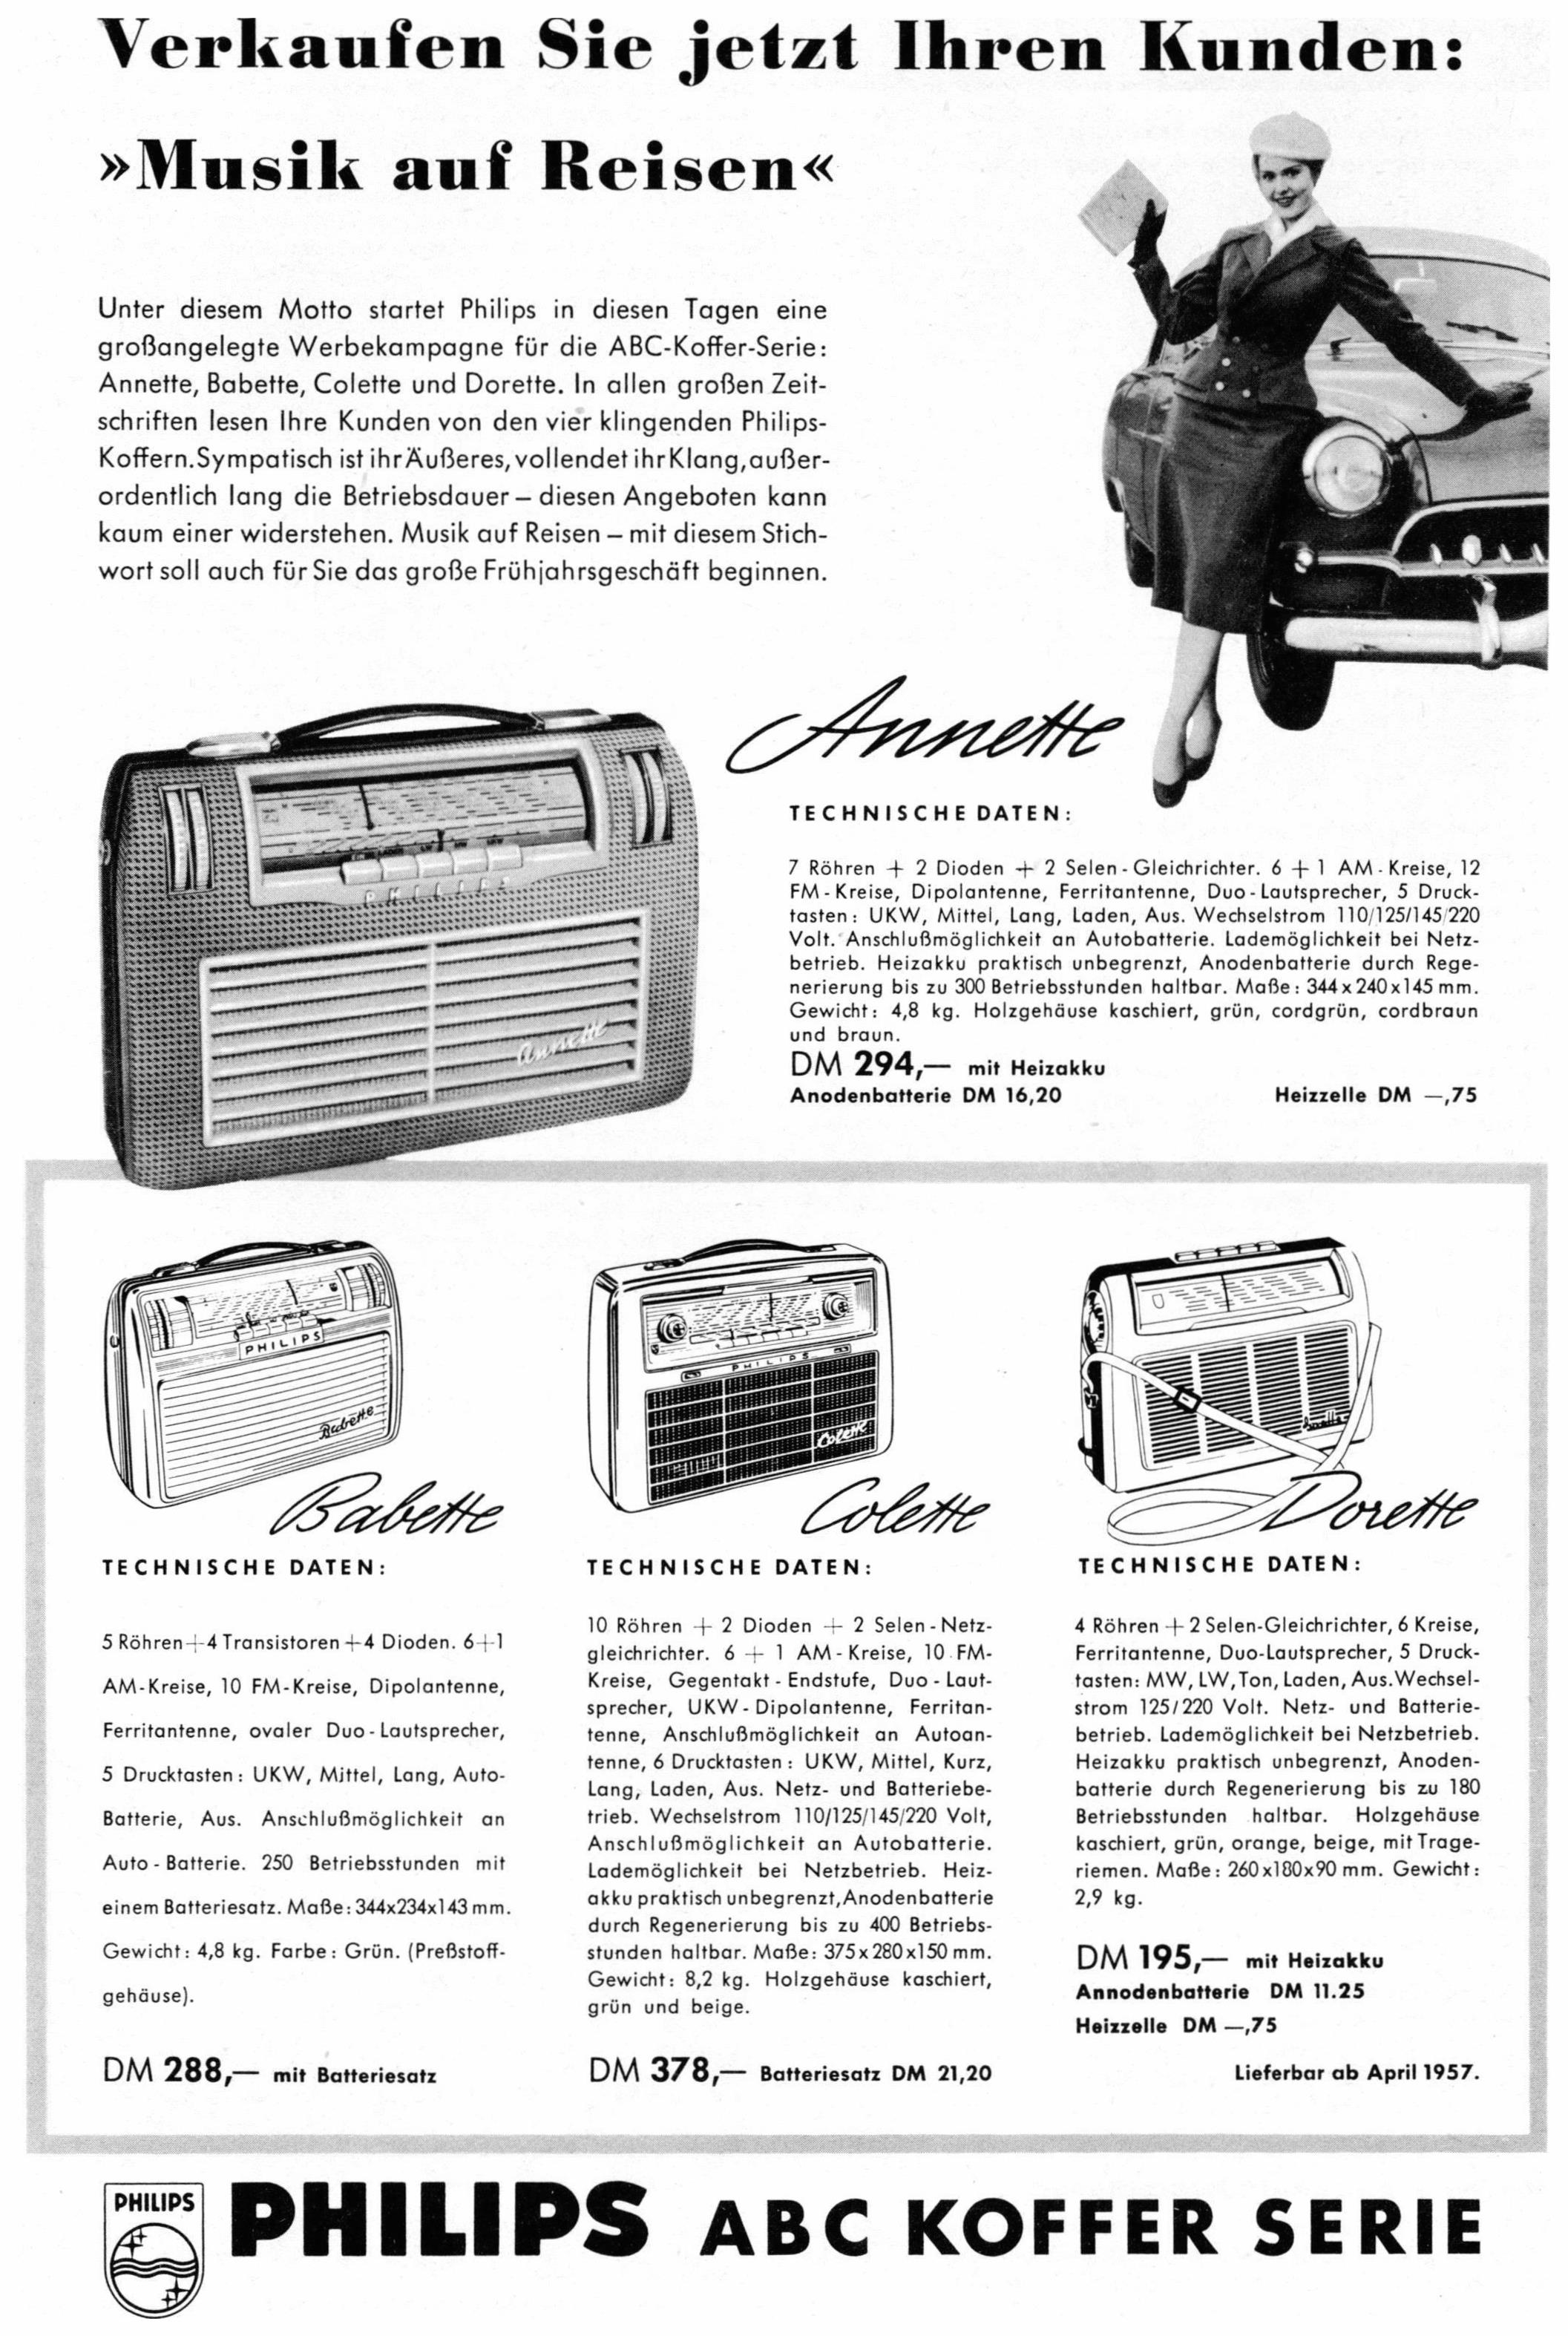 Philips 1957 10.jpg